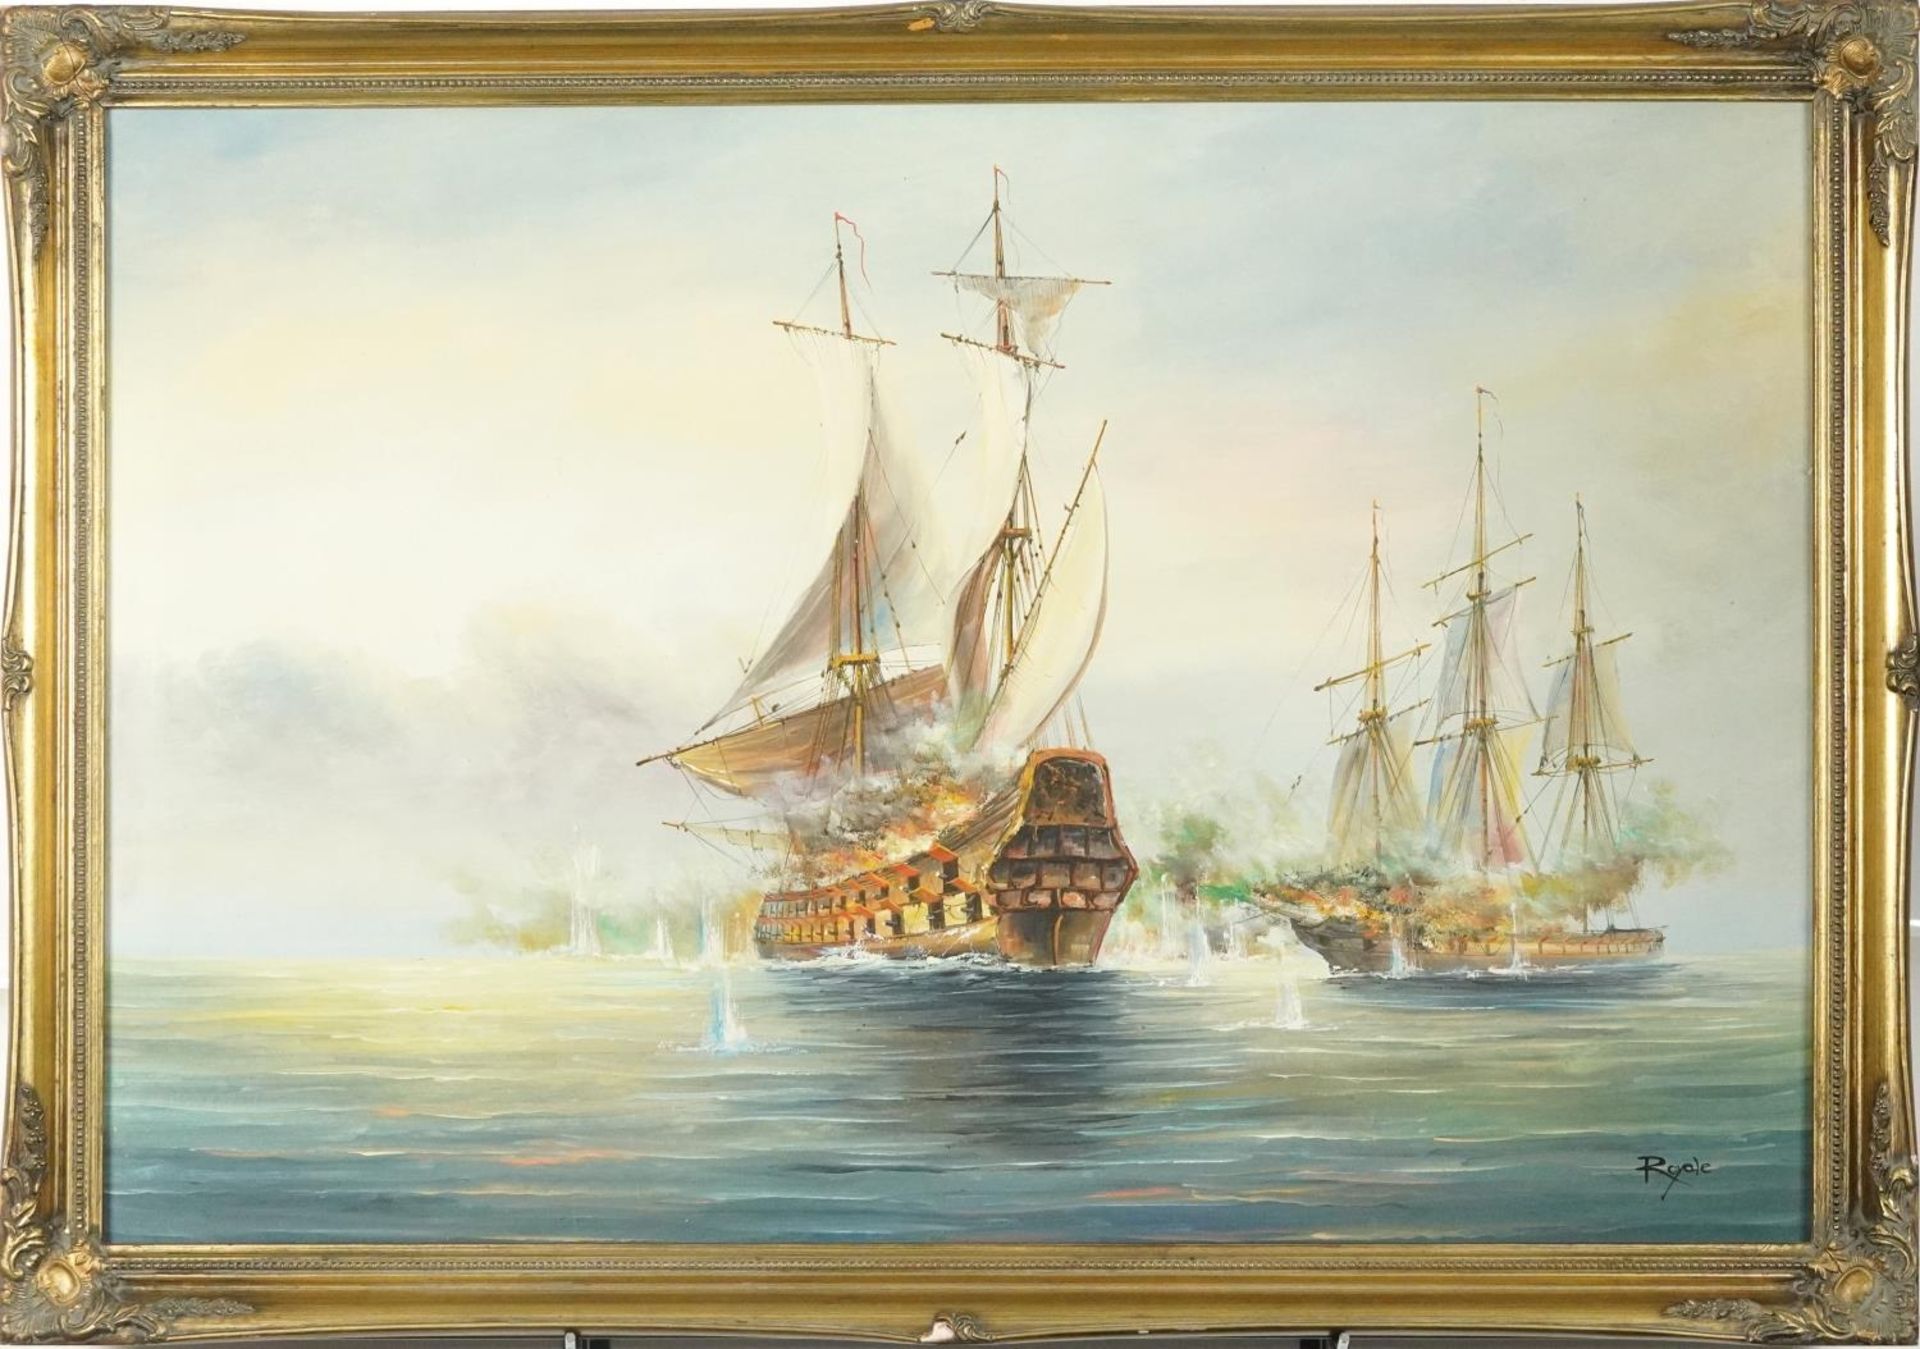 Royale - Men-O-War, Naval interest oil on canvas, framed, 90cm x 60cm excluding the frame - Bild 2 aus 5